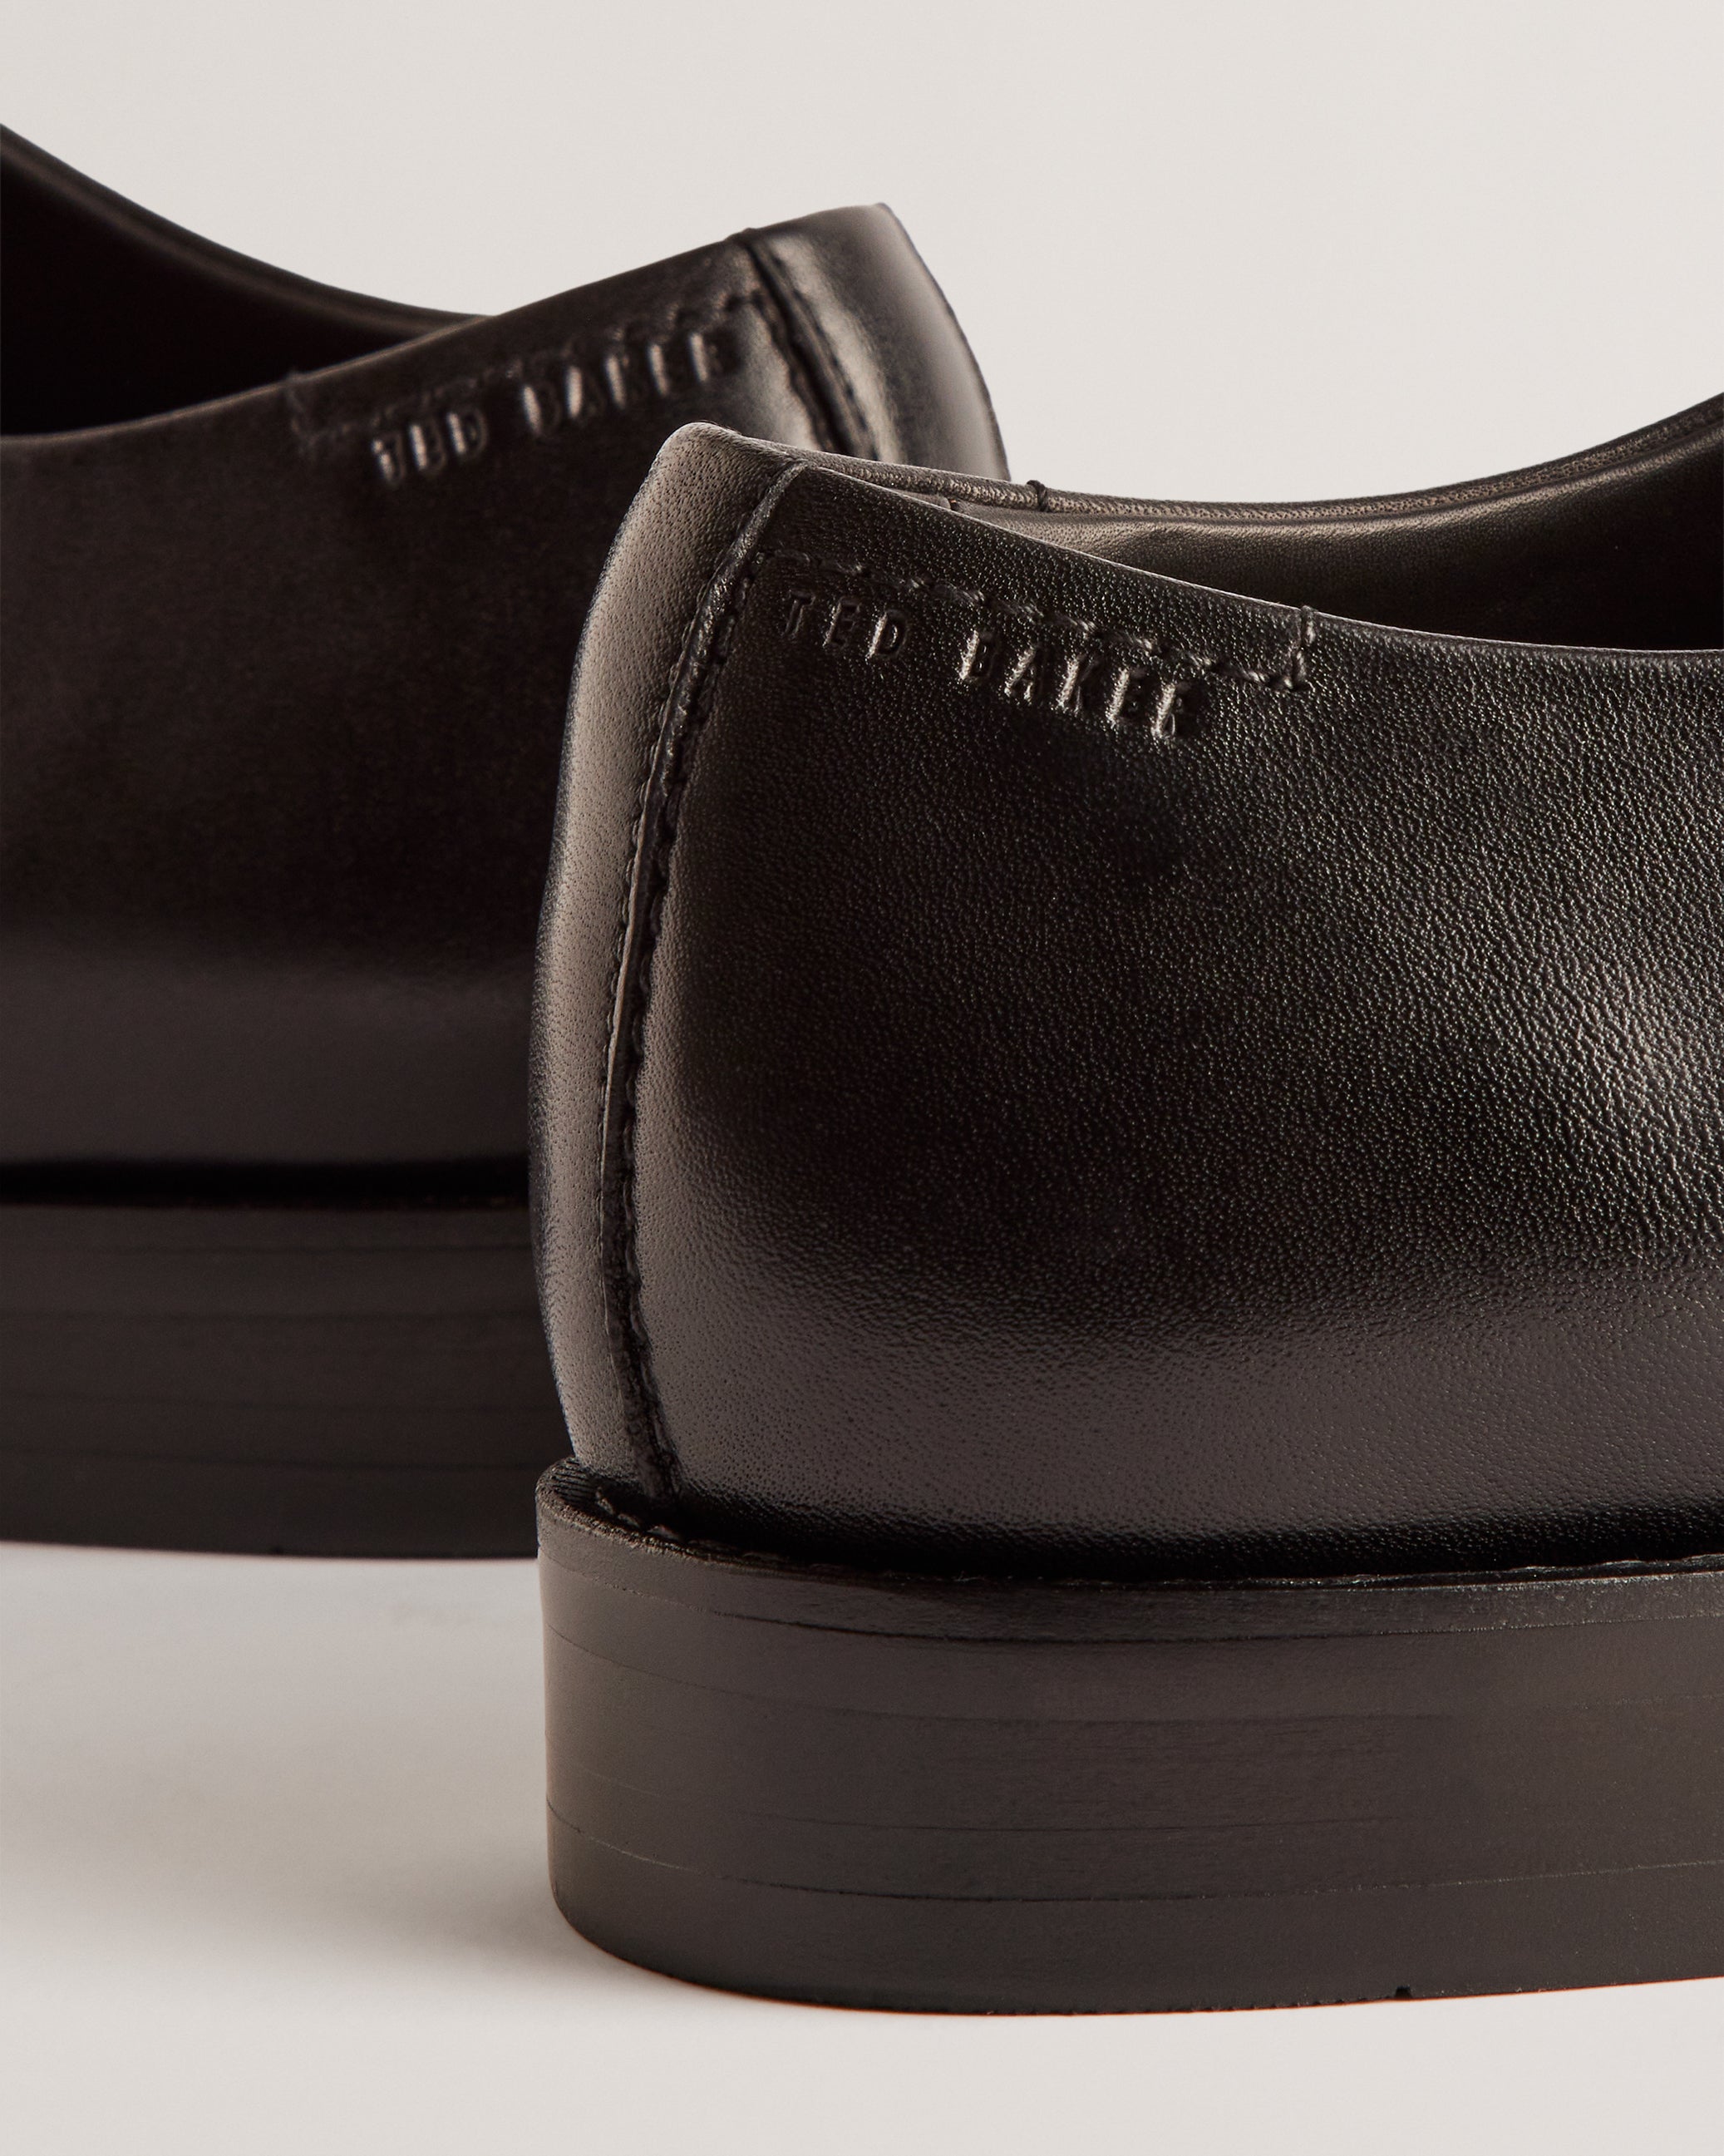 Rregent Textured Leather Derby Shoes Black